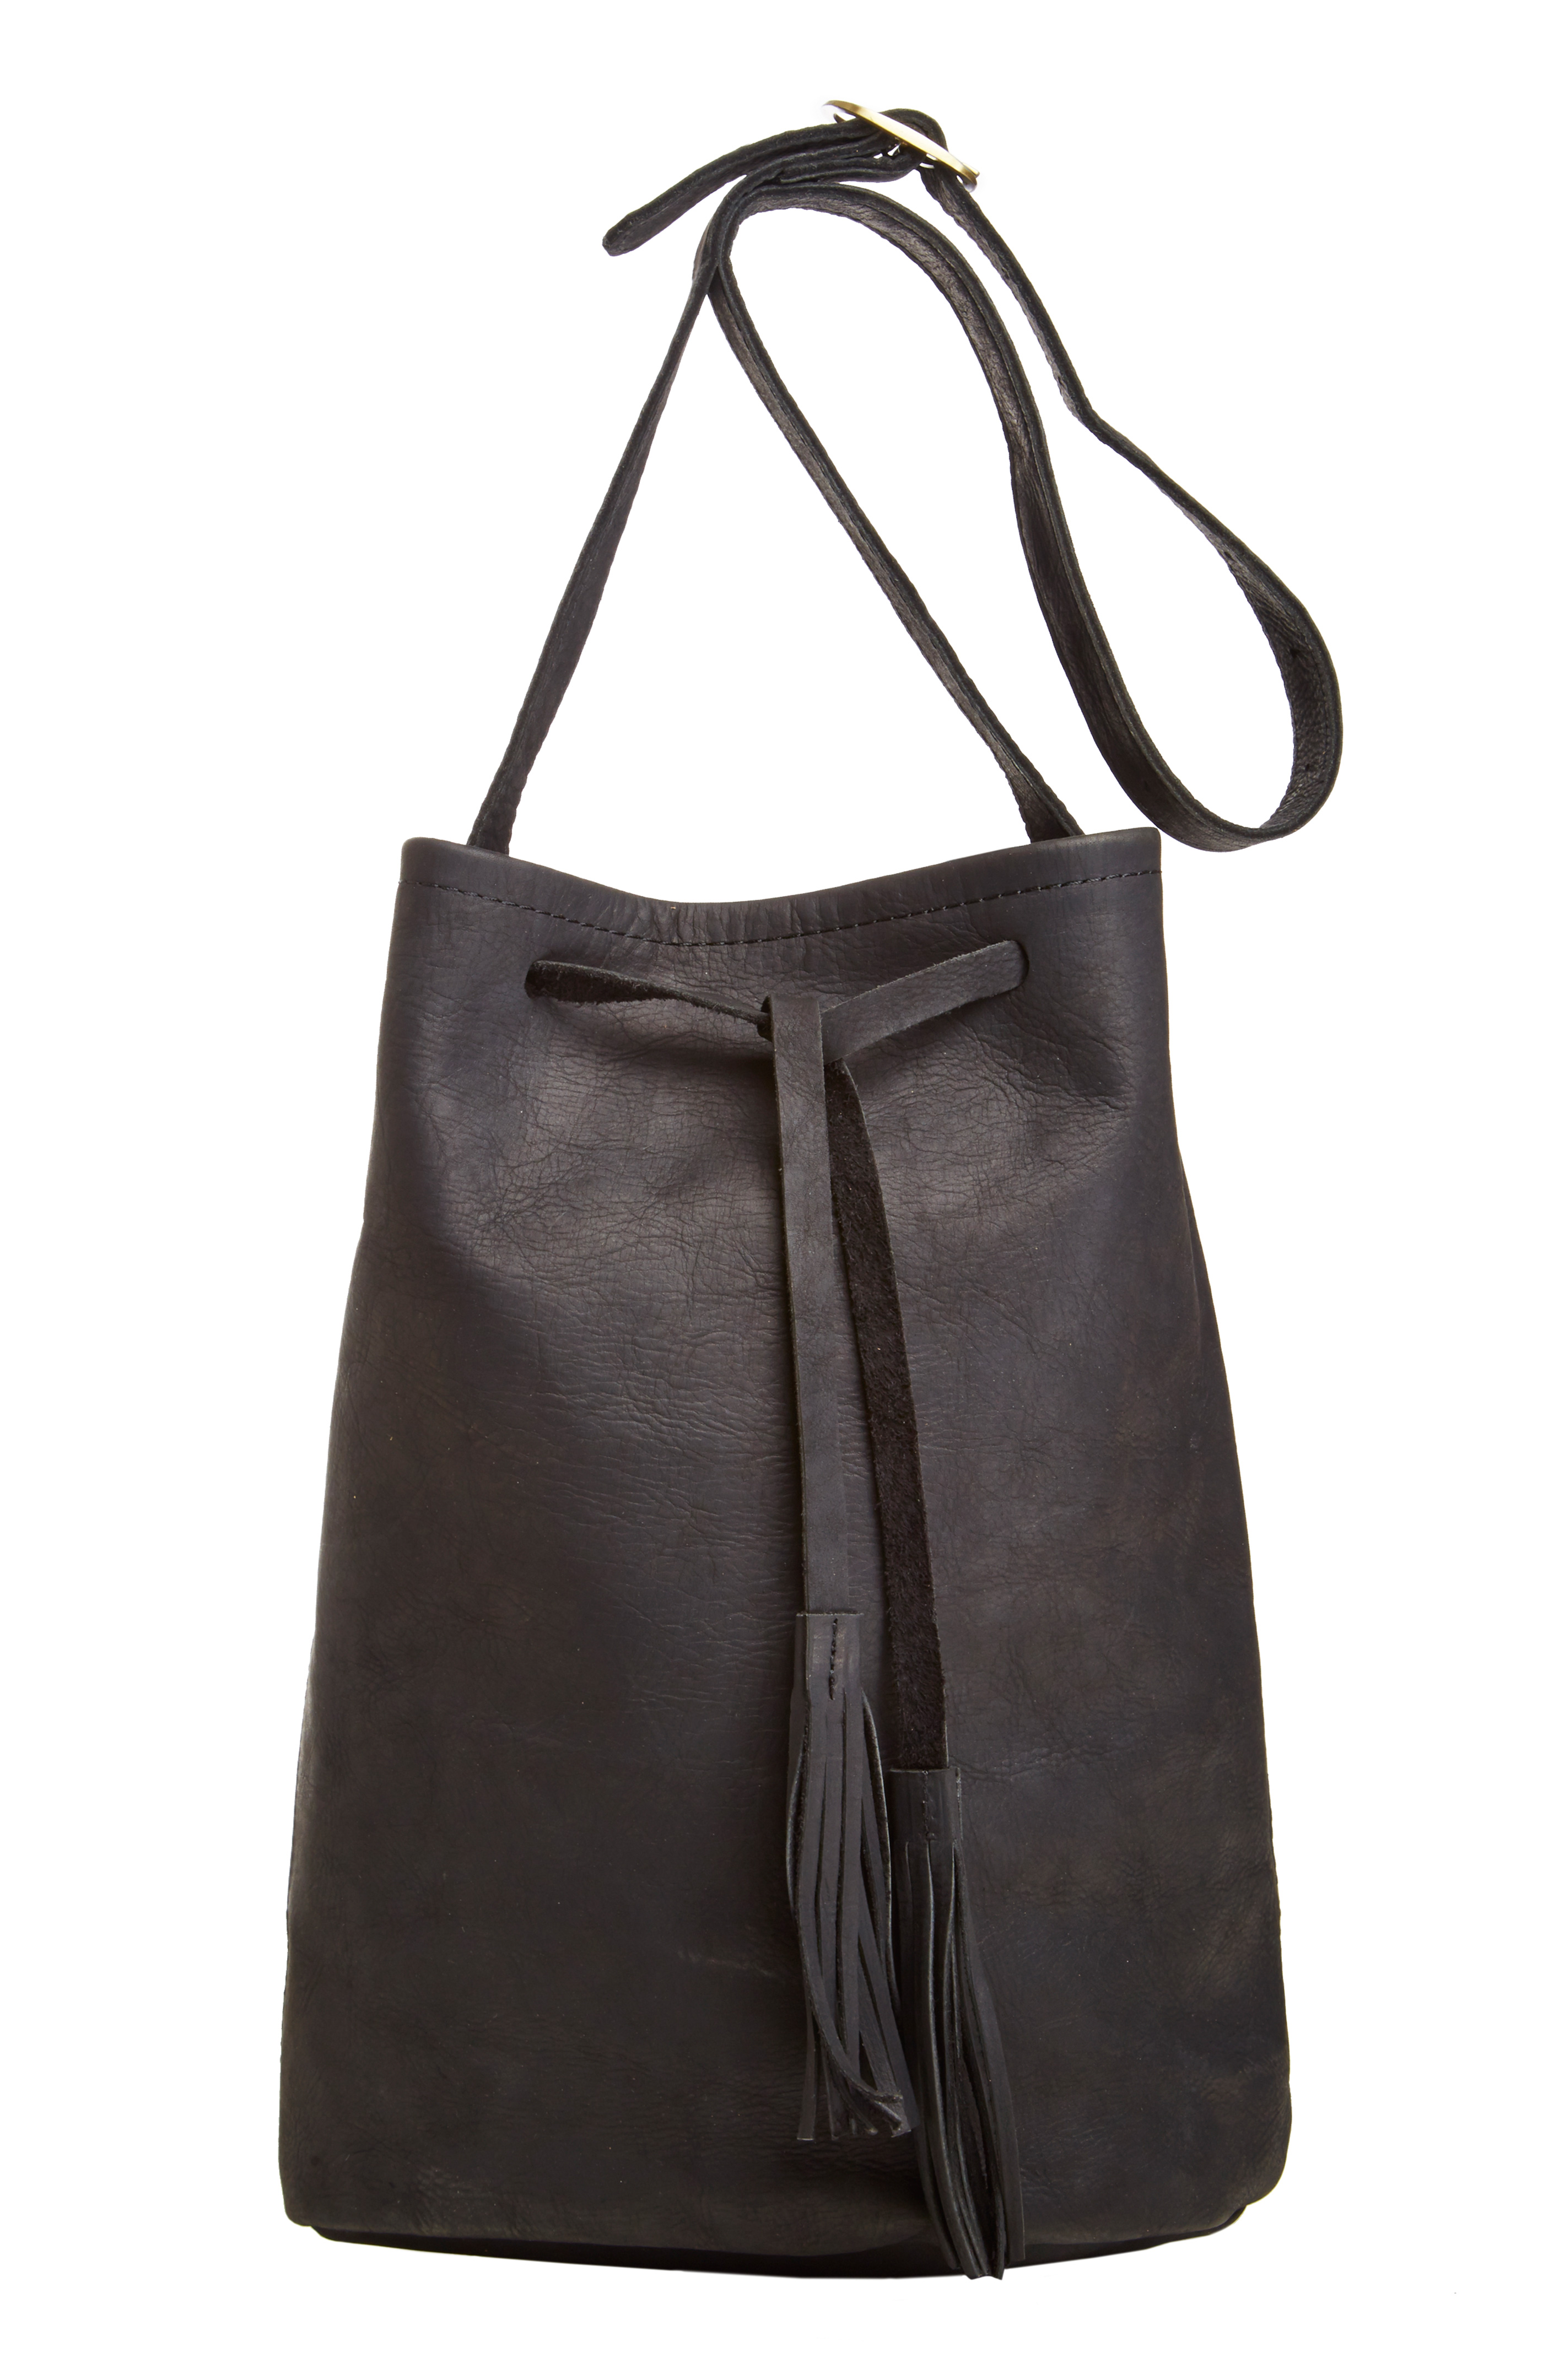 Jesslyn Blake Leather Bucket Bag in Black | DAILYLOOK